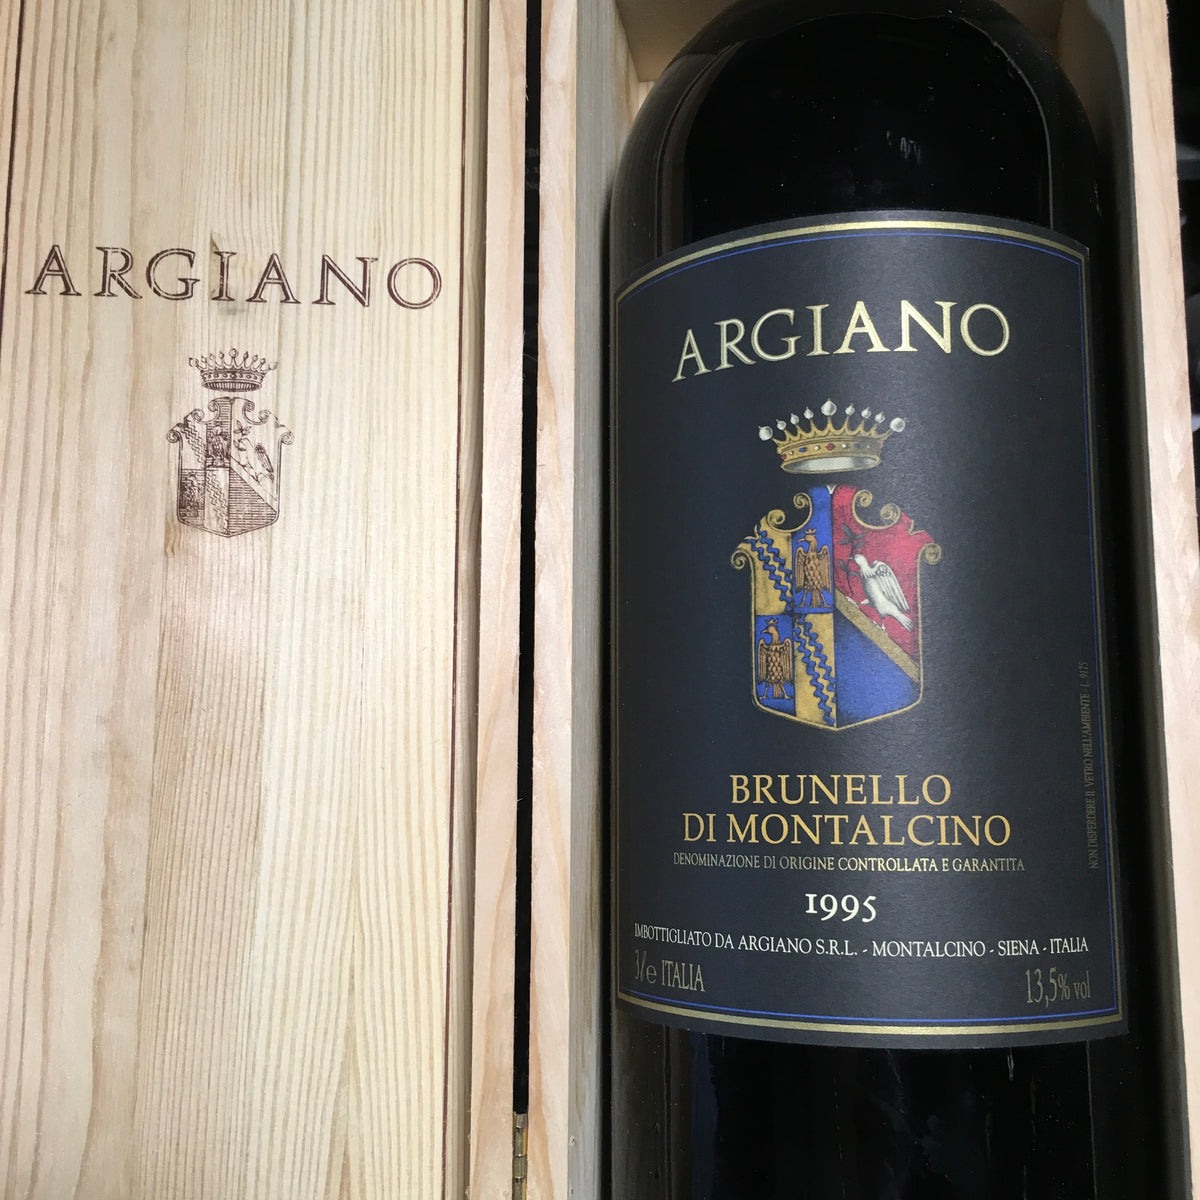 Brunello di Montalcino, Argiano 1995 Double Magnum - Butlers Wine Cellar